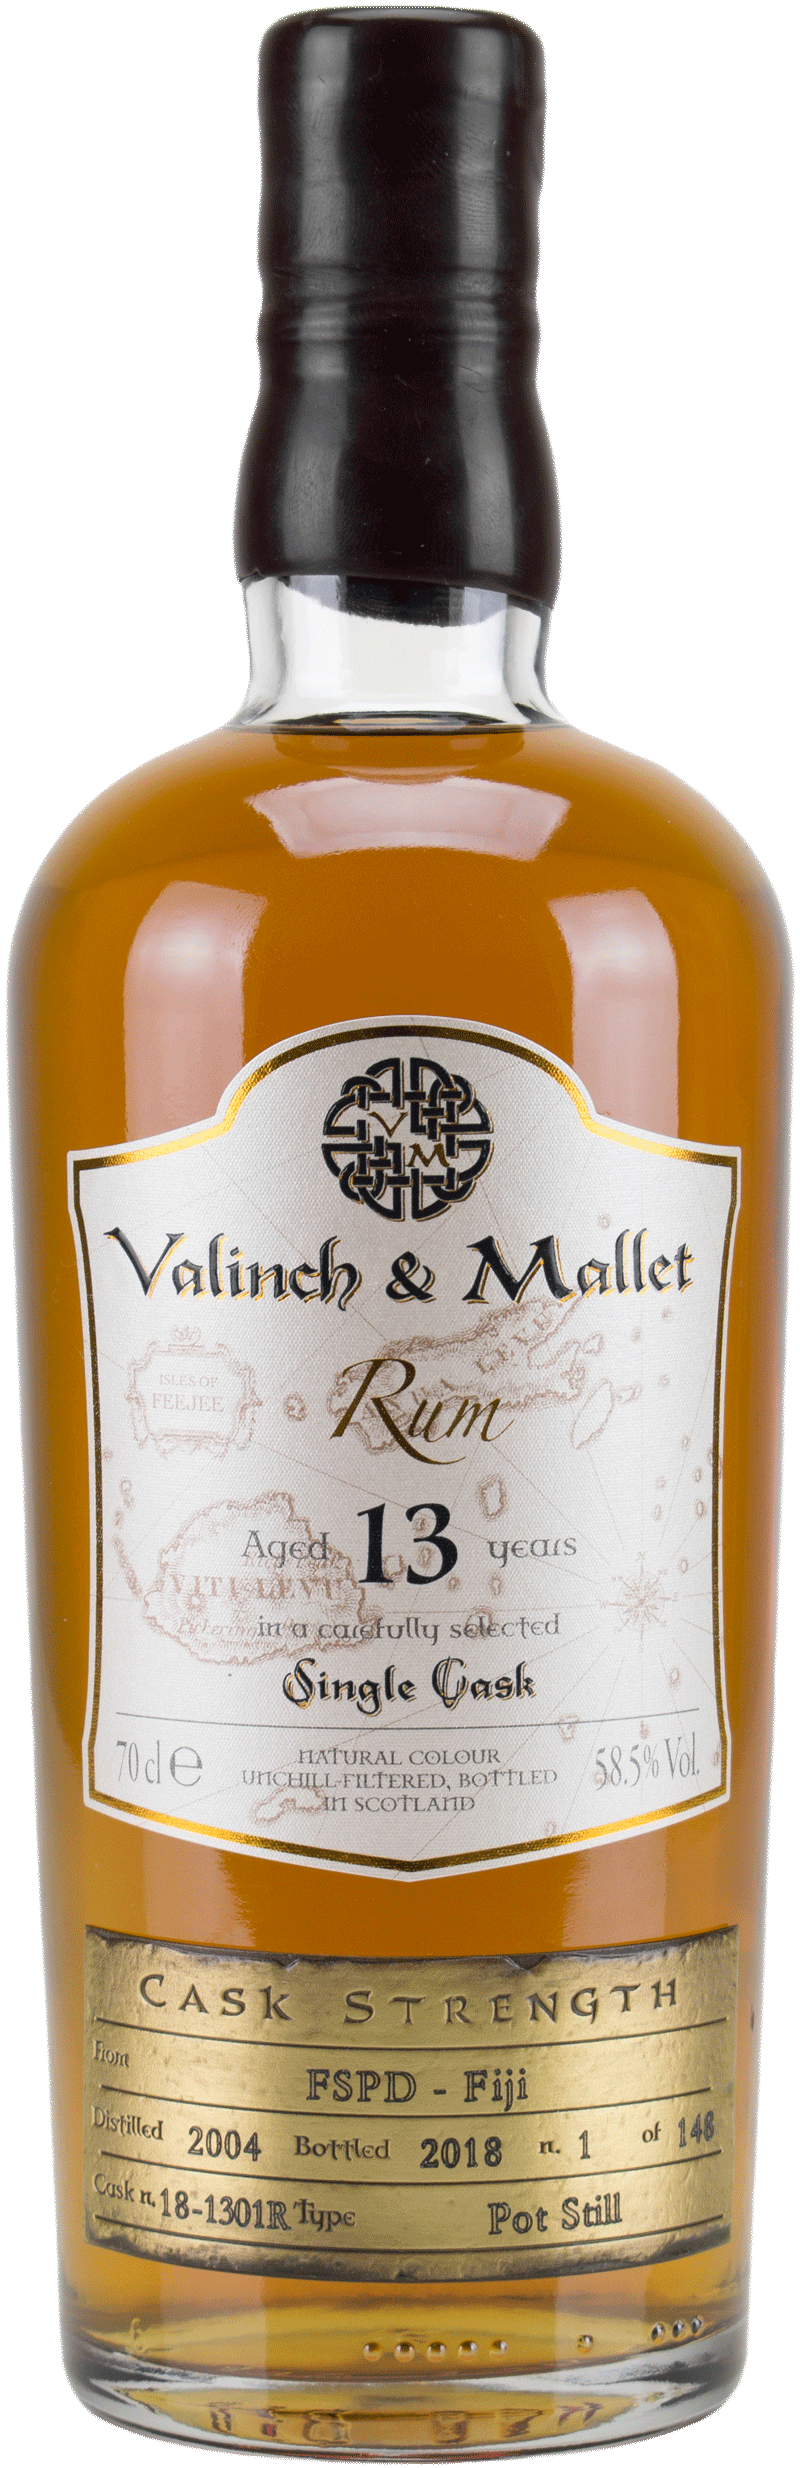 Valinch & Mallet Rum FSPD Fiji 13 anni